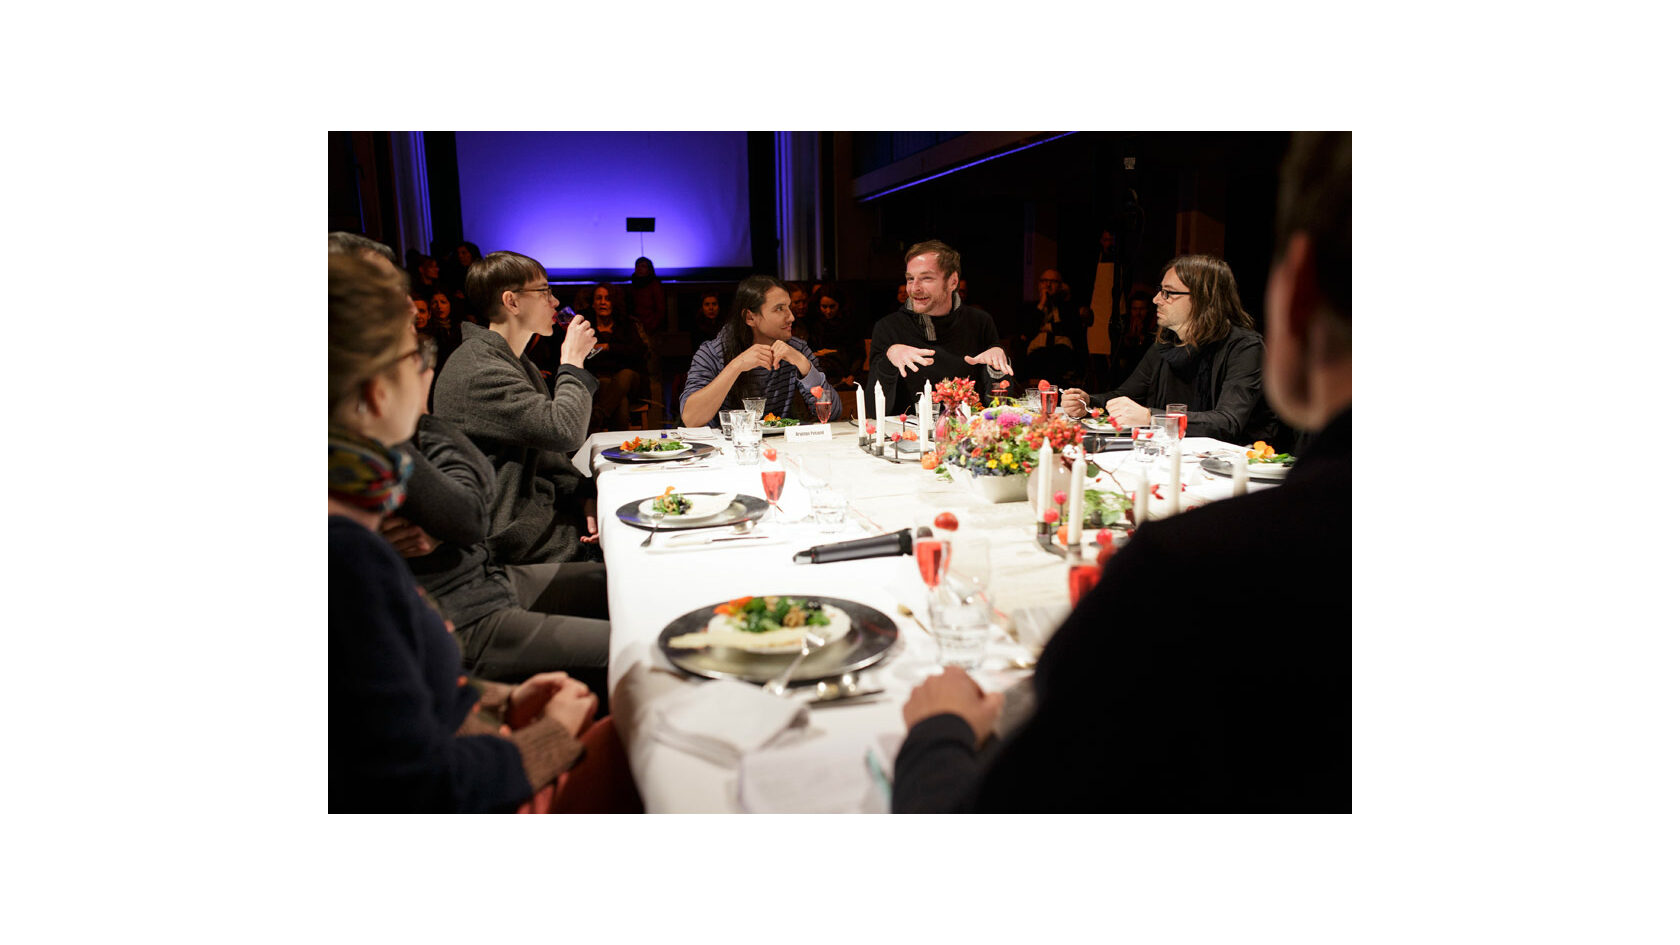 Teilnehmende des Projekts Polylog Dresden tauschen sich während des Abendessens an einem festlich gedeckten Tisch im Ballsaal des Pieschener Zentralwerks aus, im Hintergrund sitzt das Publikum.